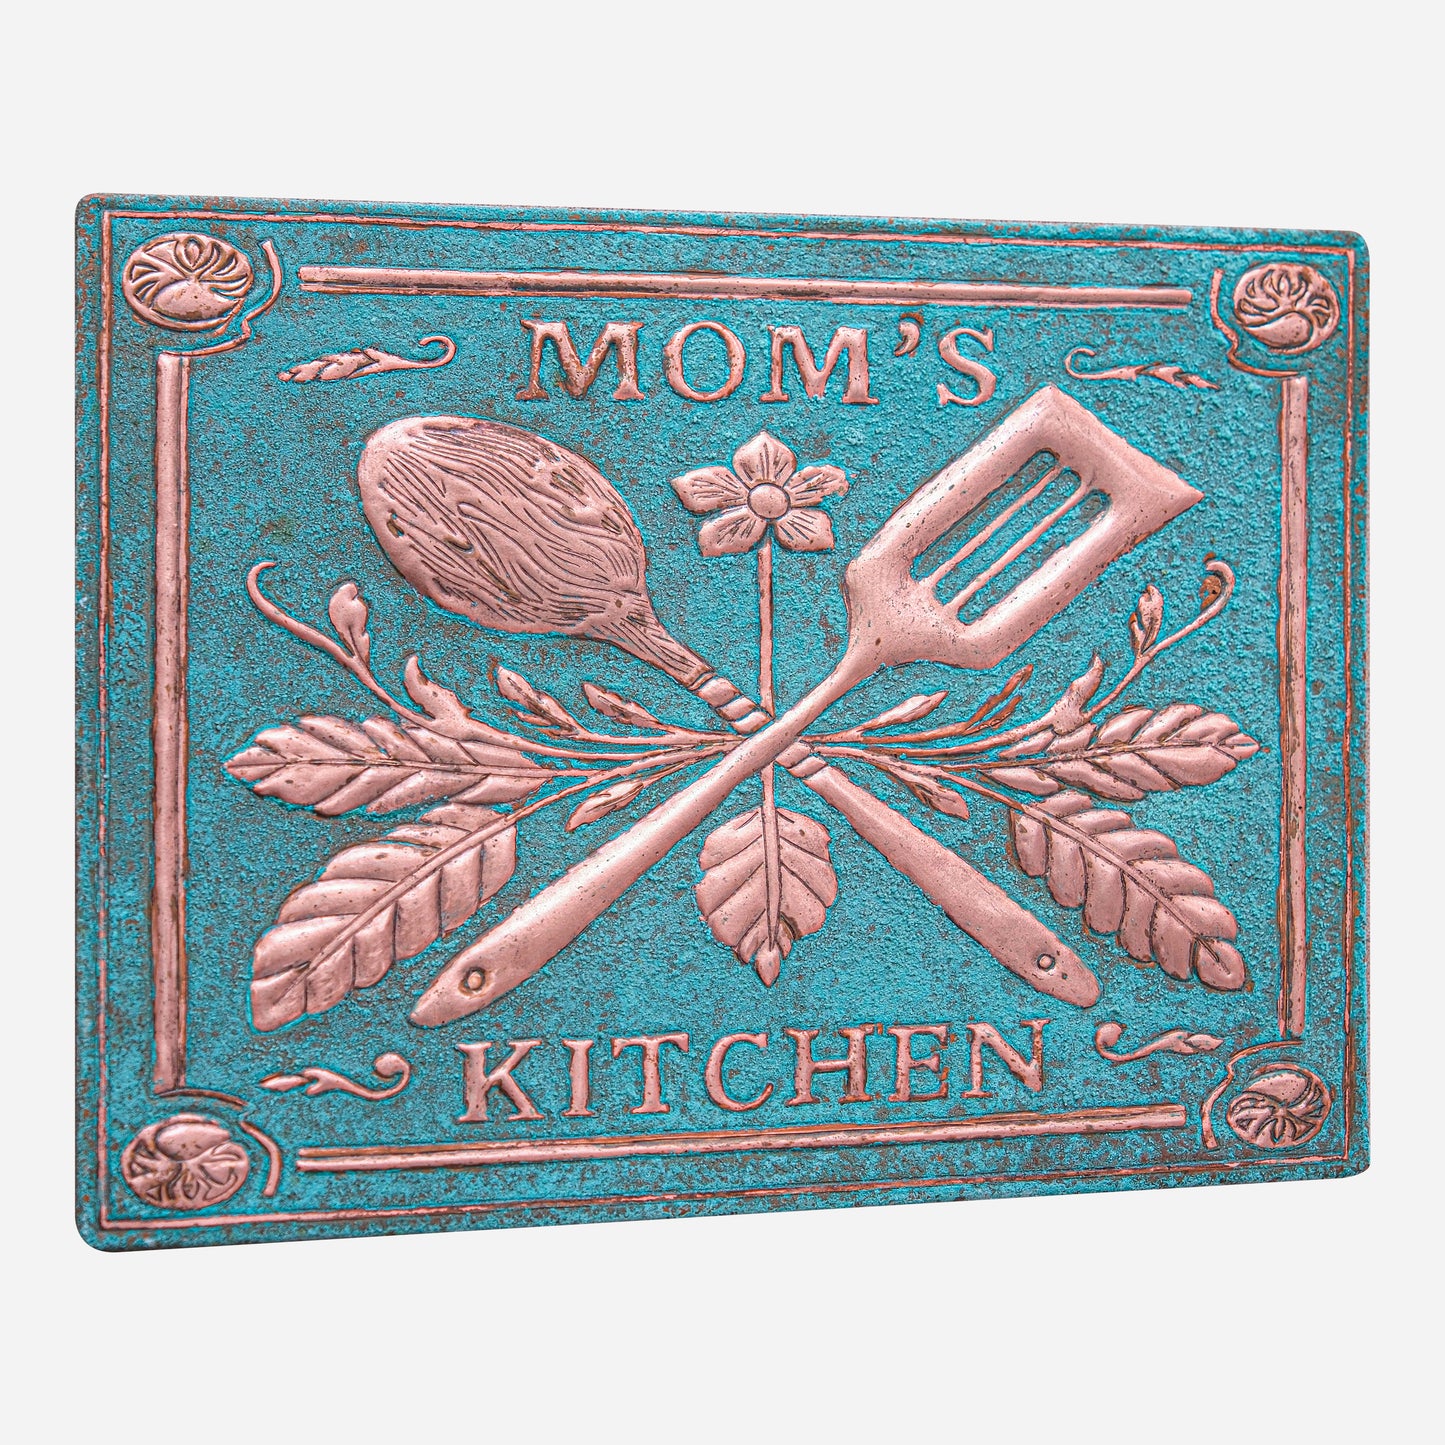 Mom's Kitchen Backsplash Tile